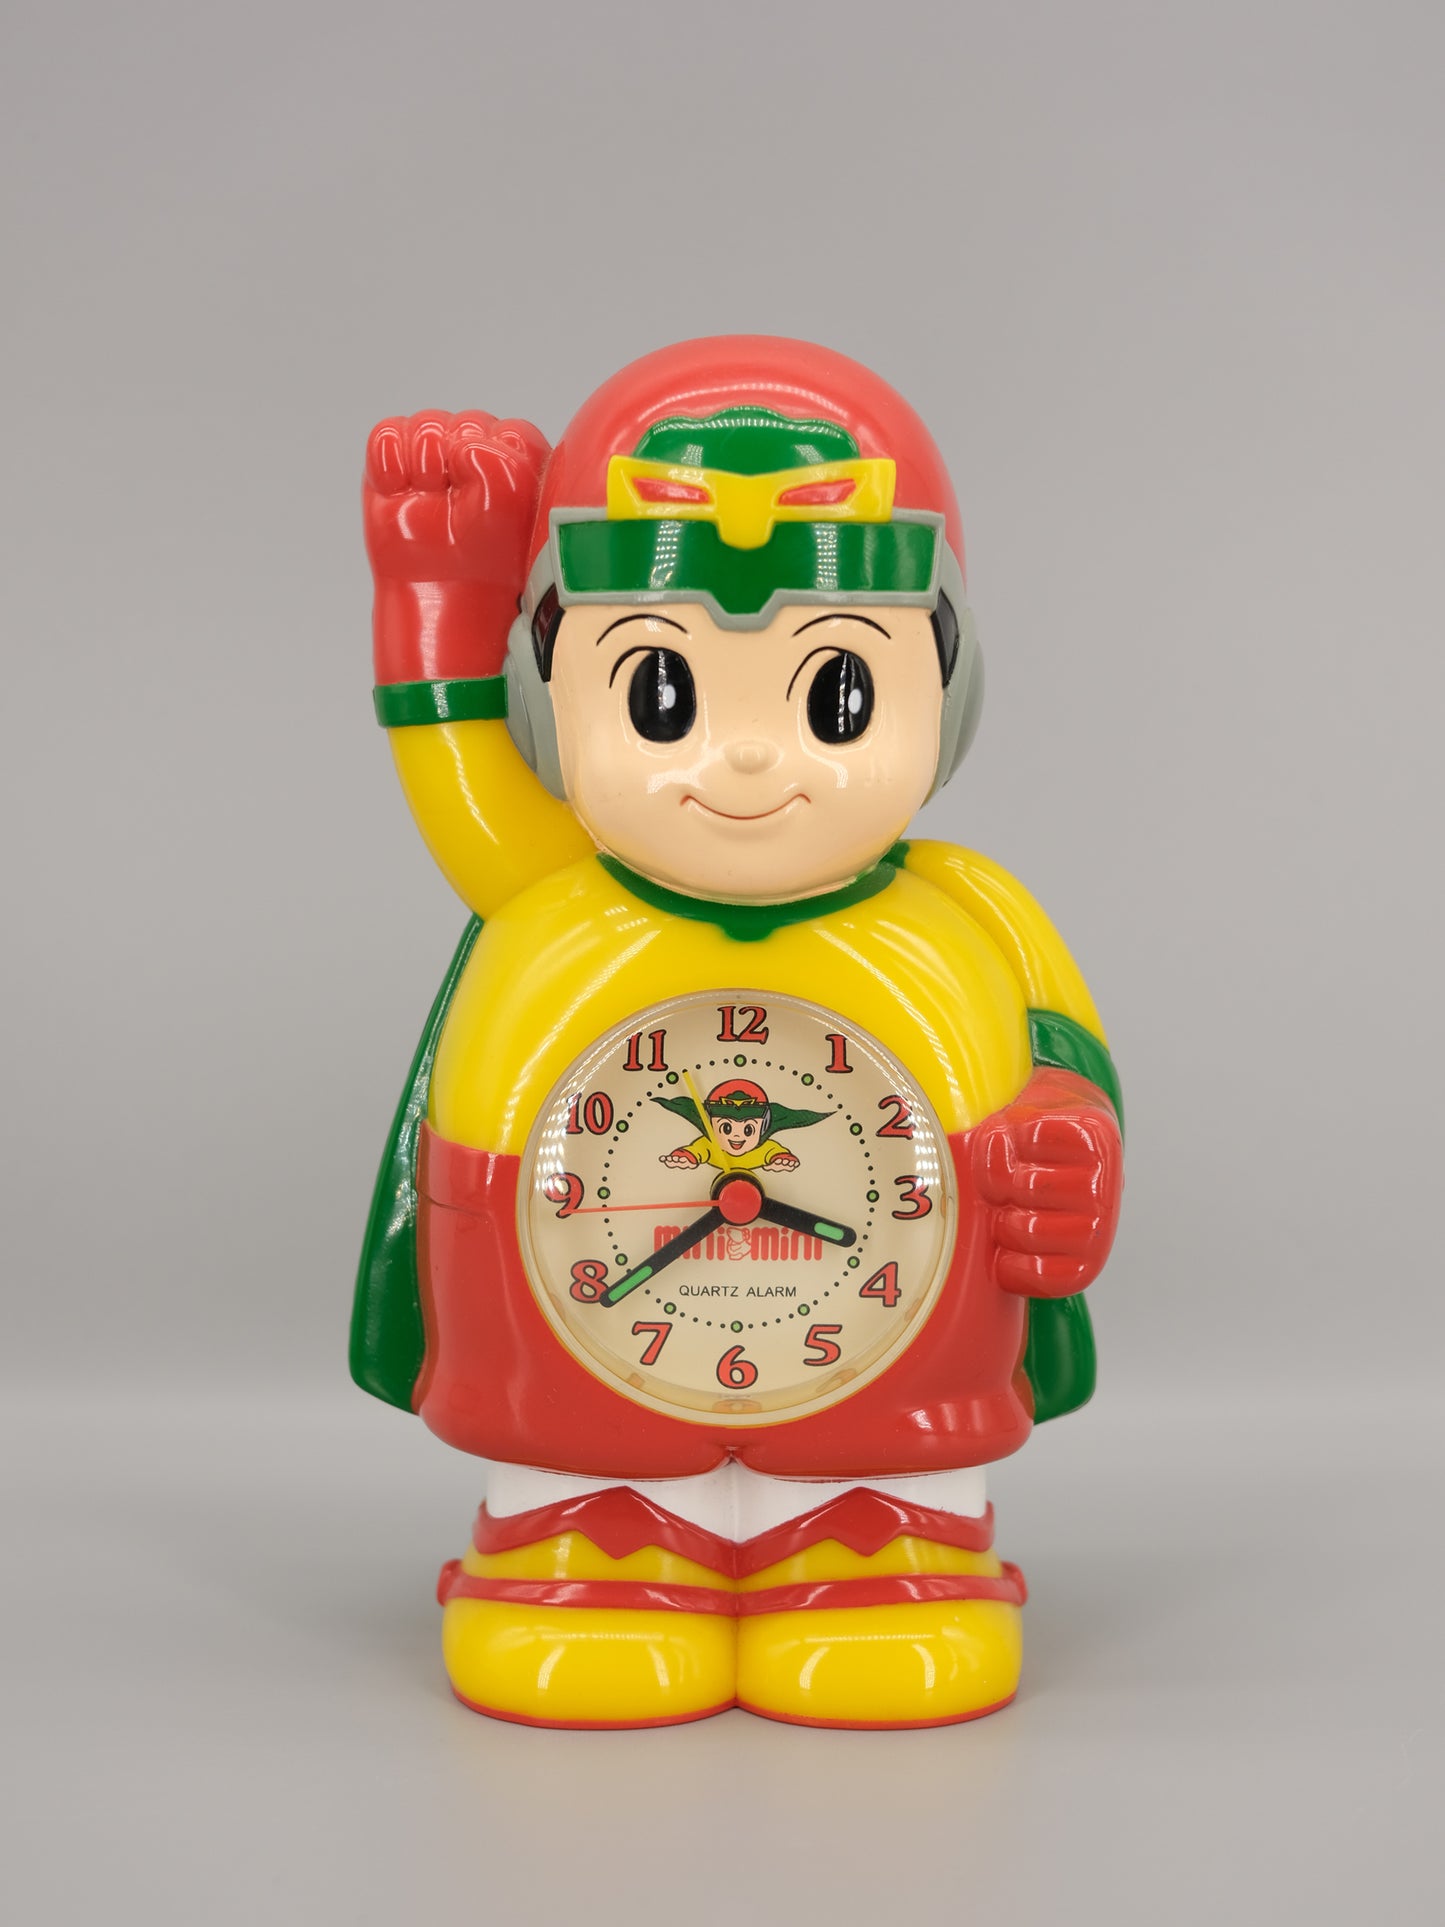 日本 MiniMini 搵屋公司 代言人 MiniMini Man Alarm Clock 鬧鐘